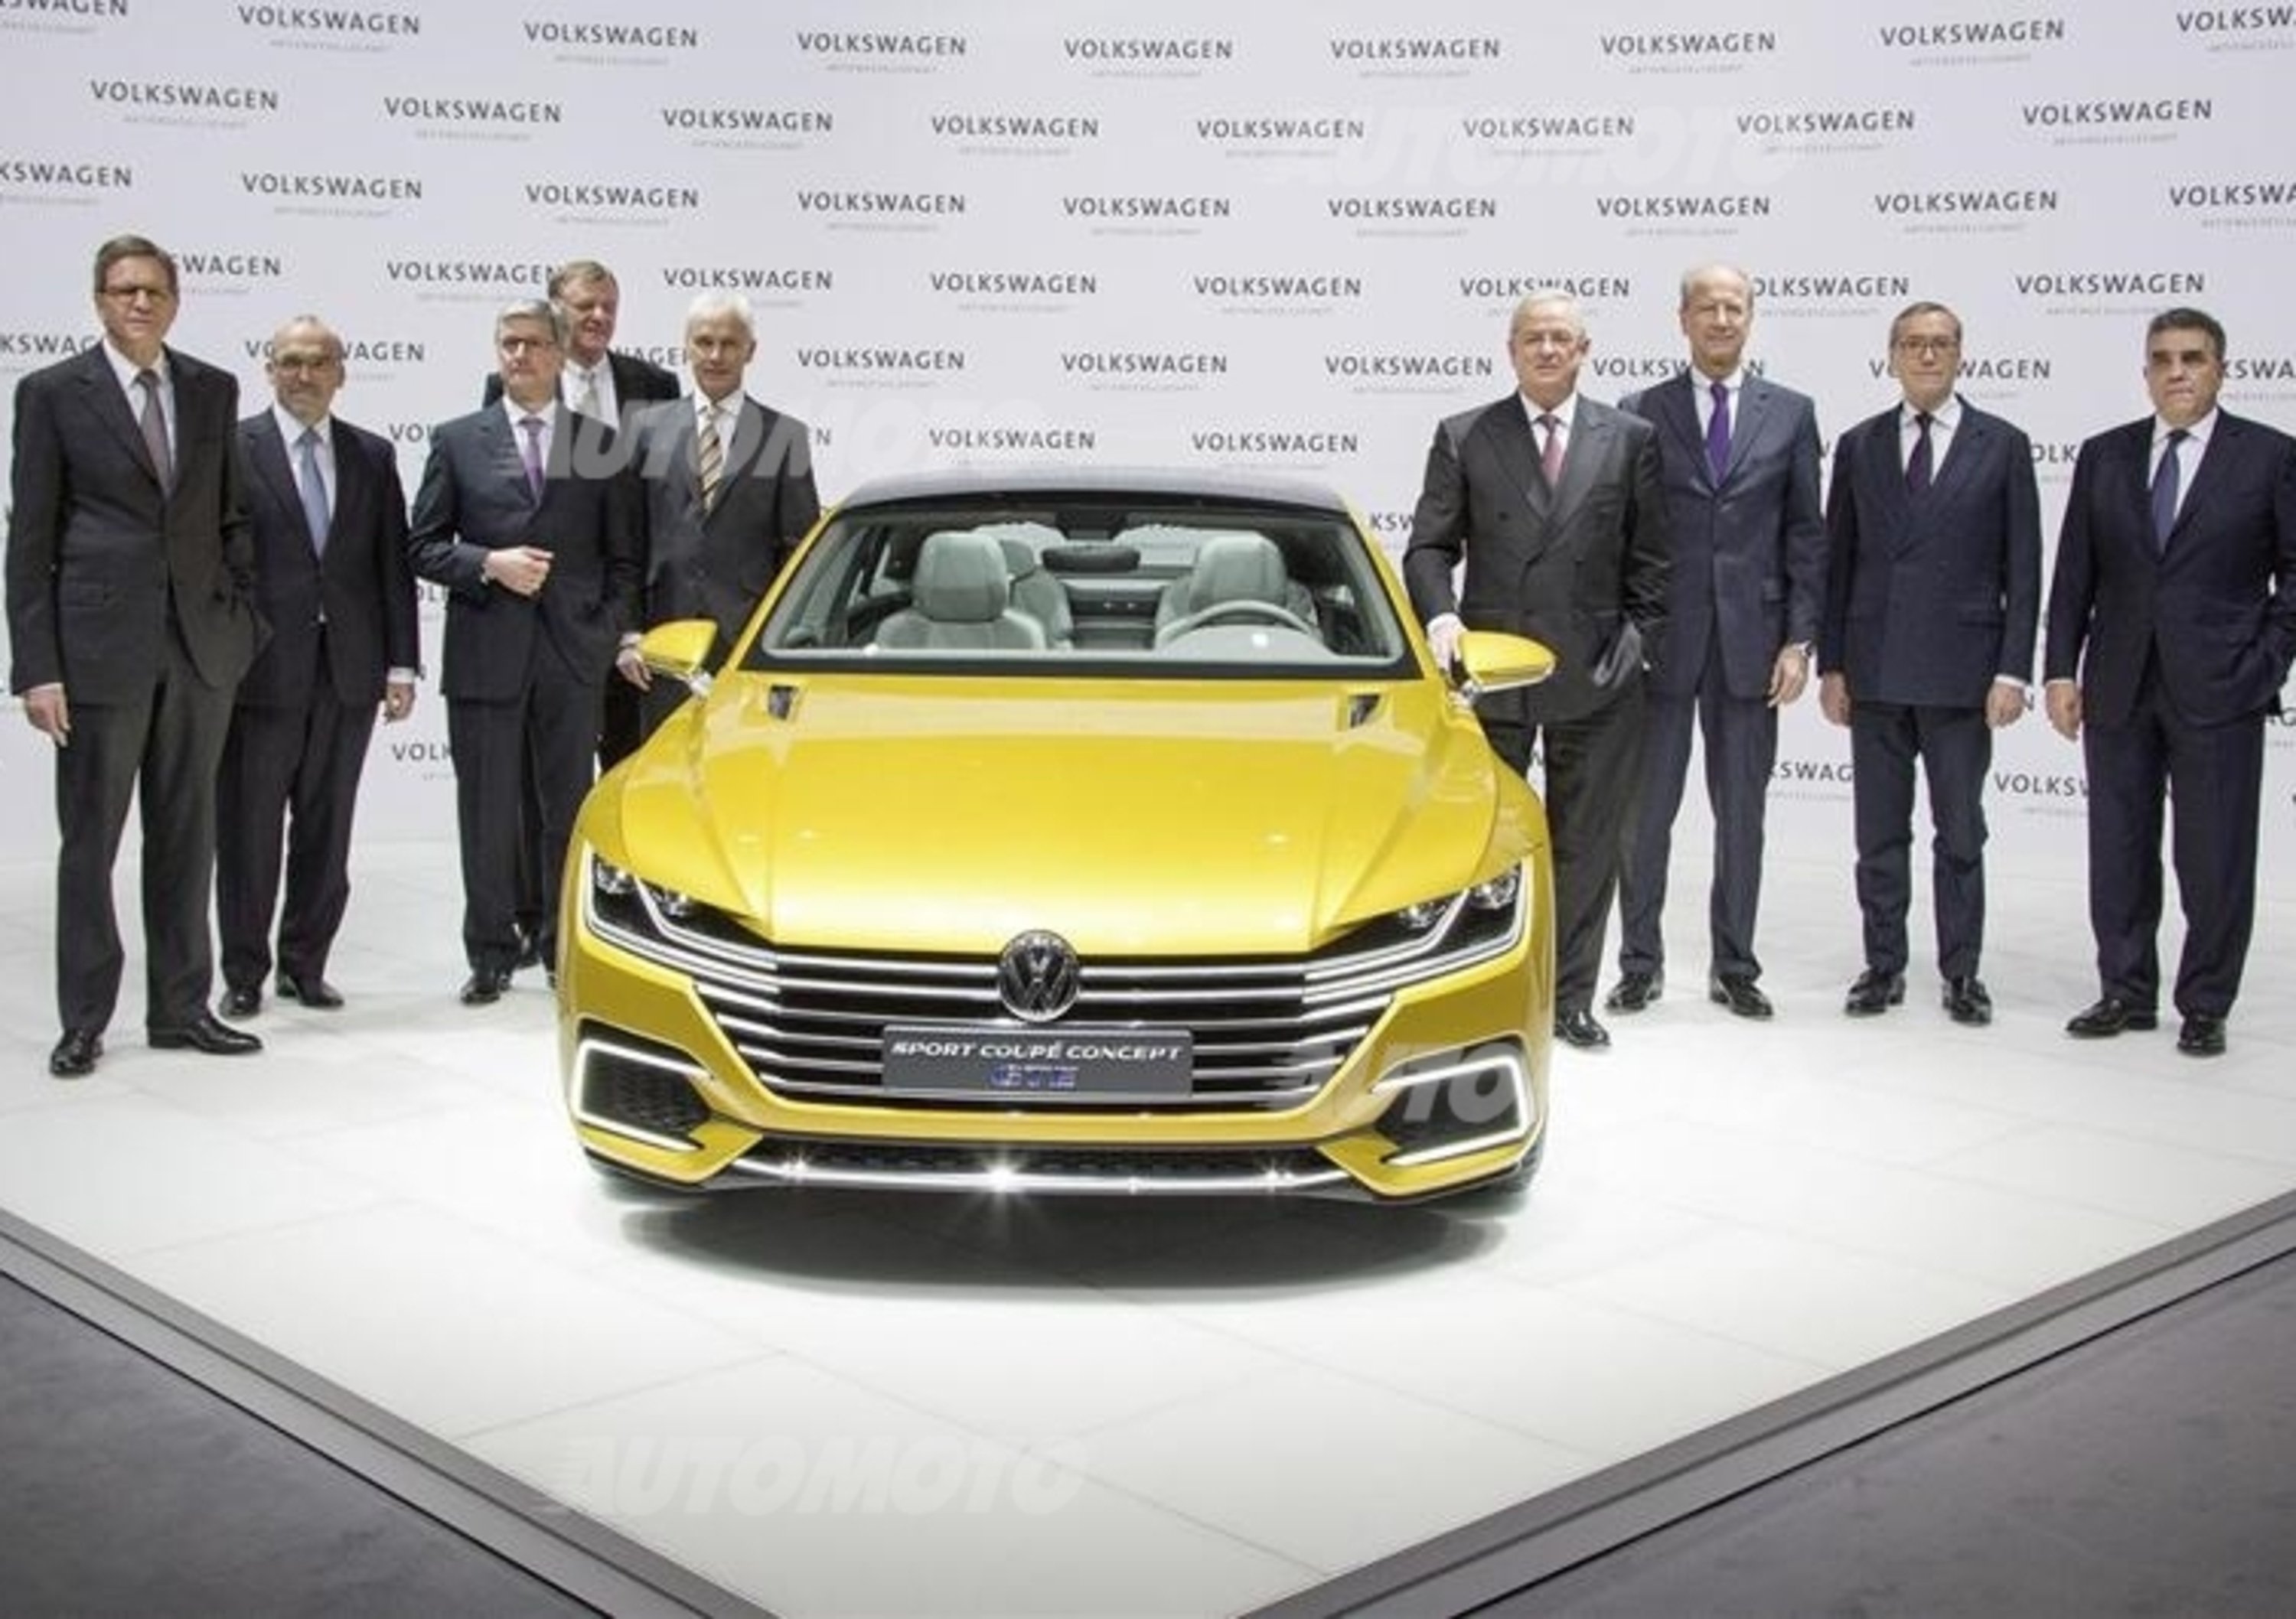 Volkswagen Group chiude un eccellente 2014 e accelera nel 2015